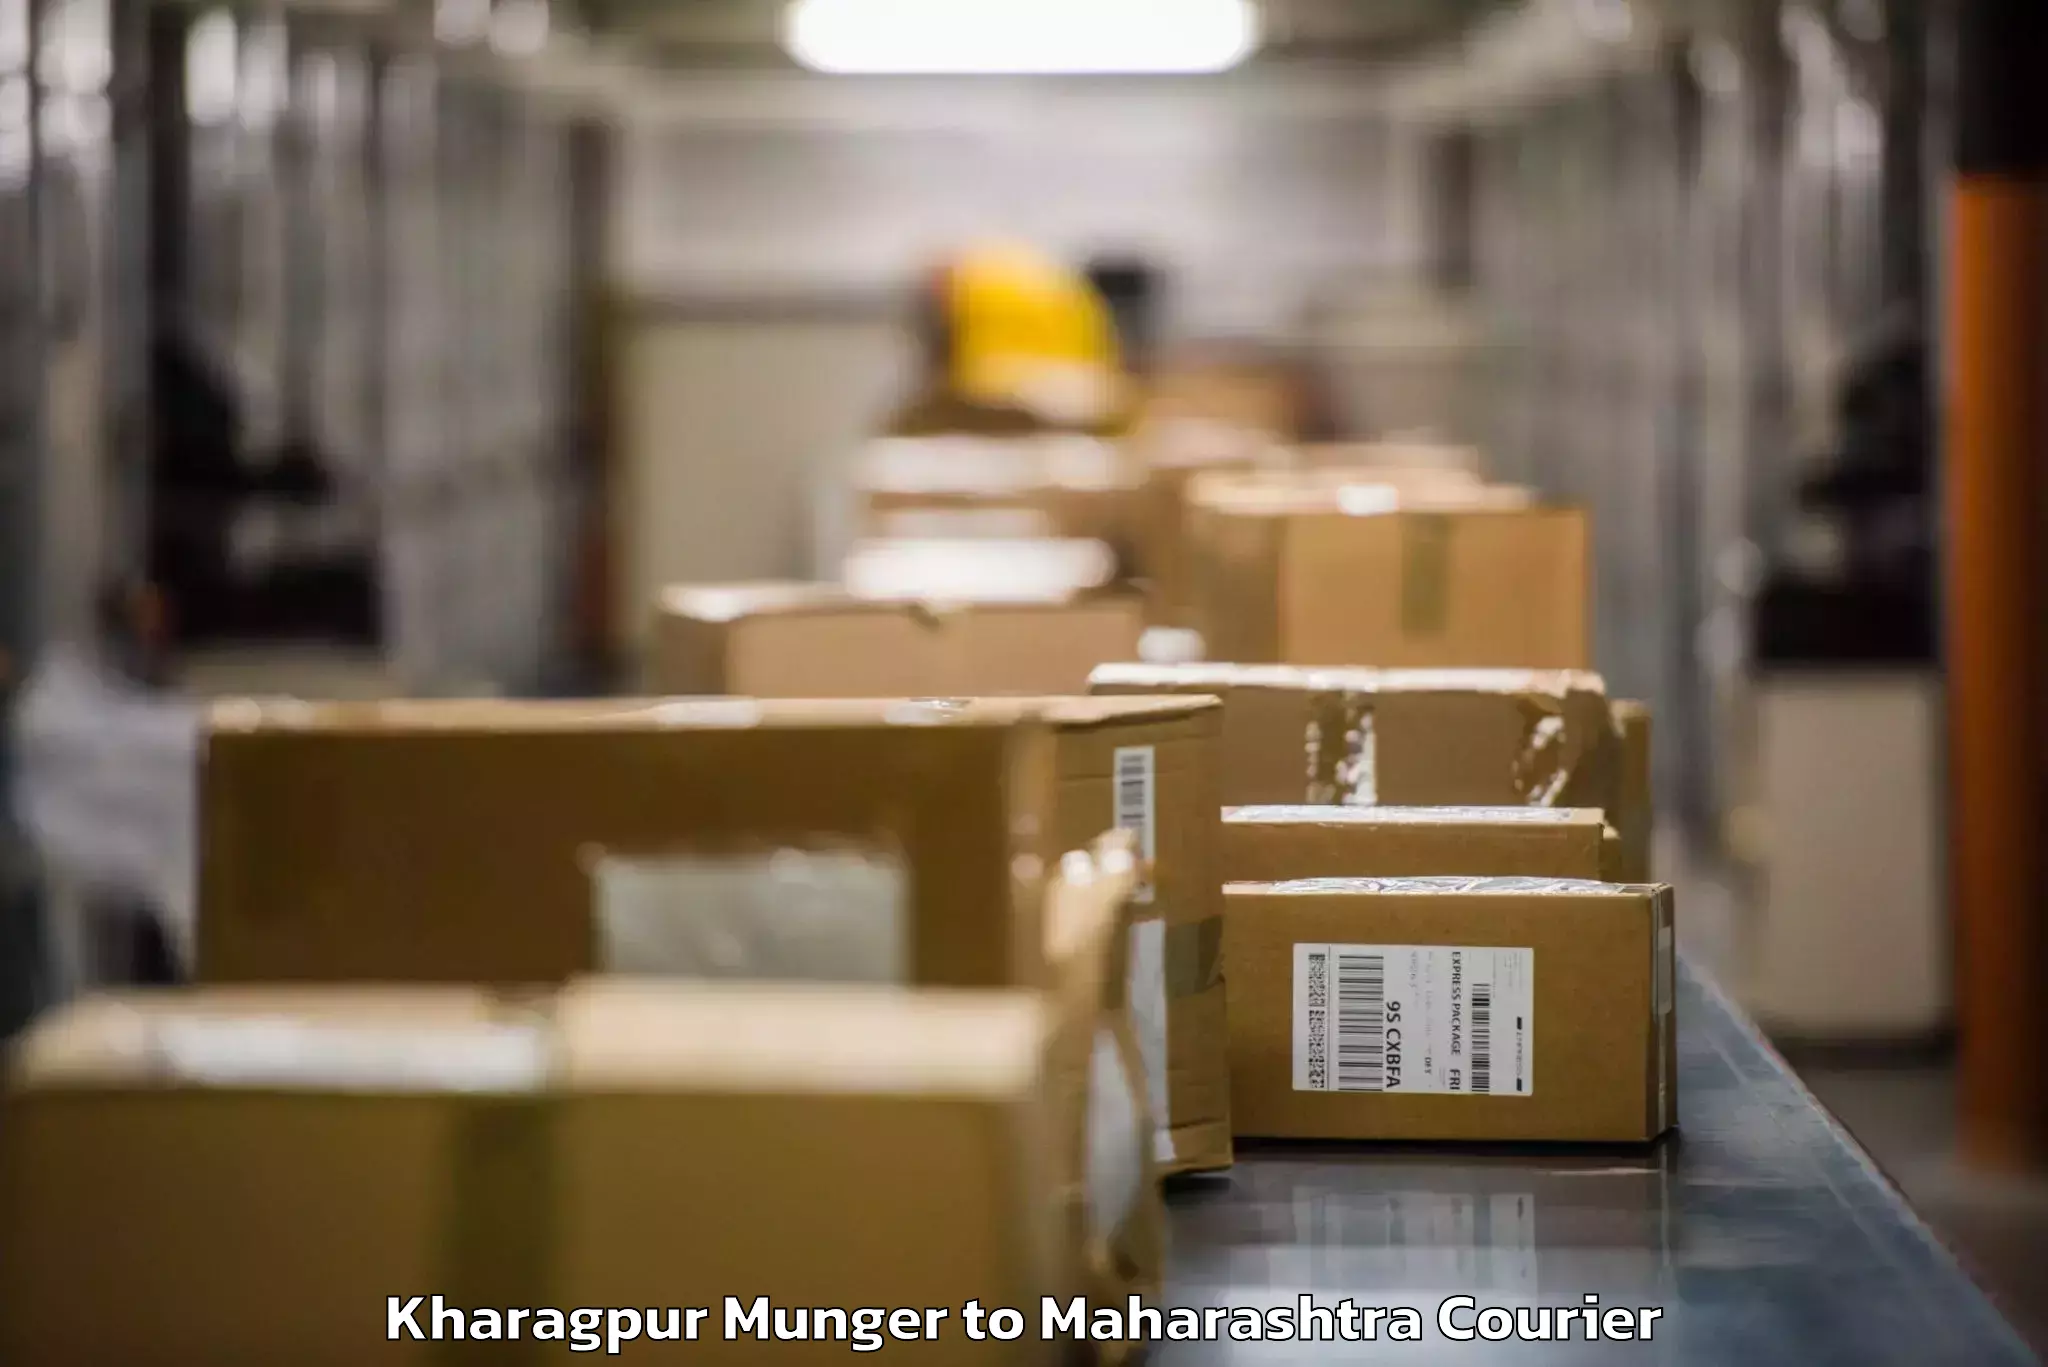 Baggage delivery optimization Kharagpur Munger to Gadhinglaj